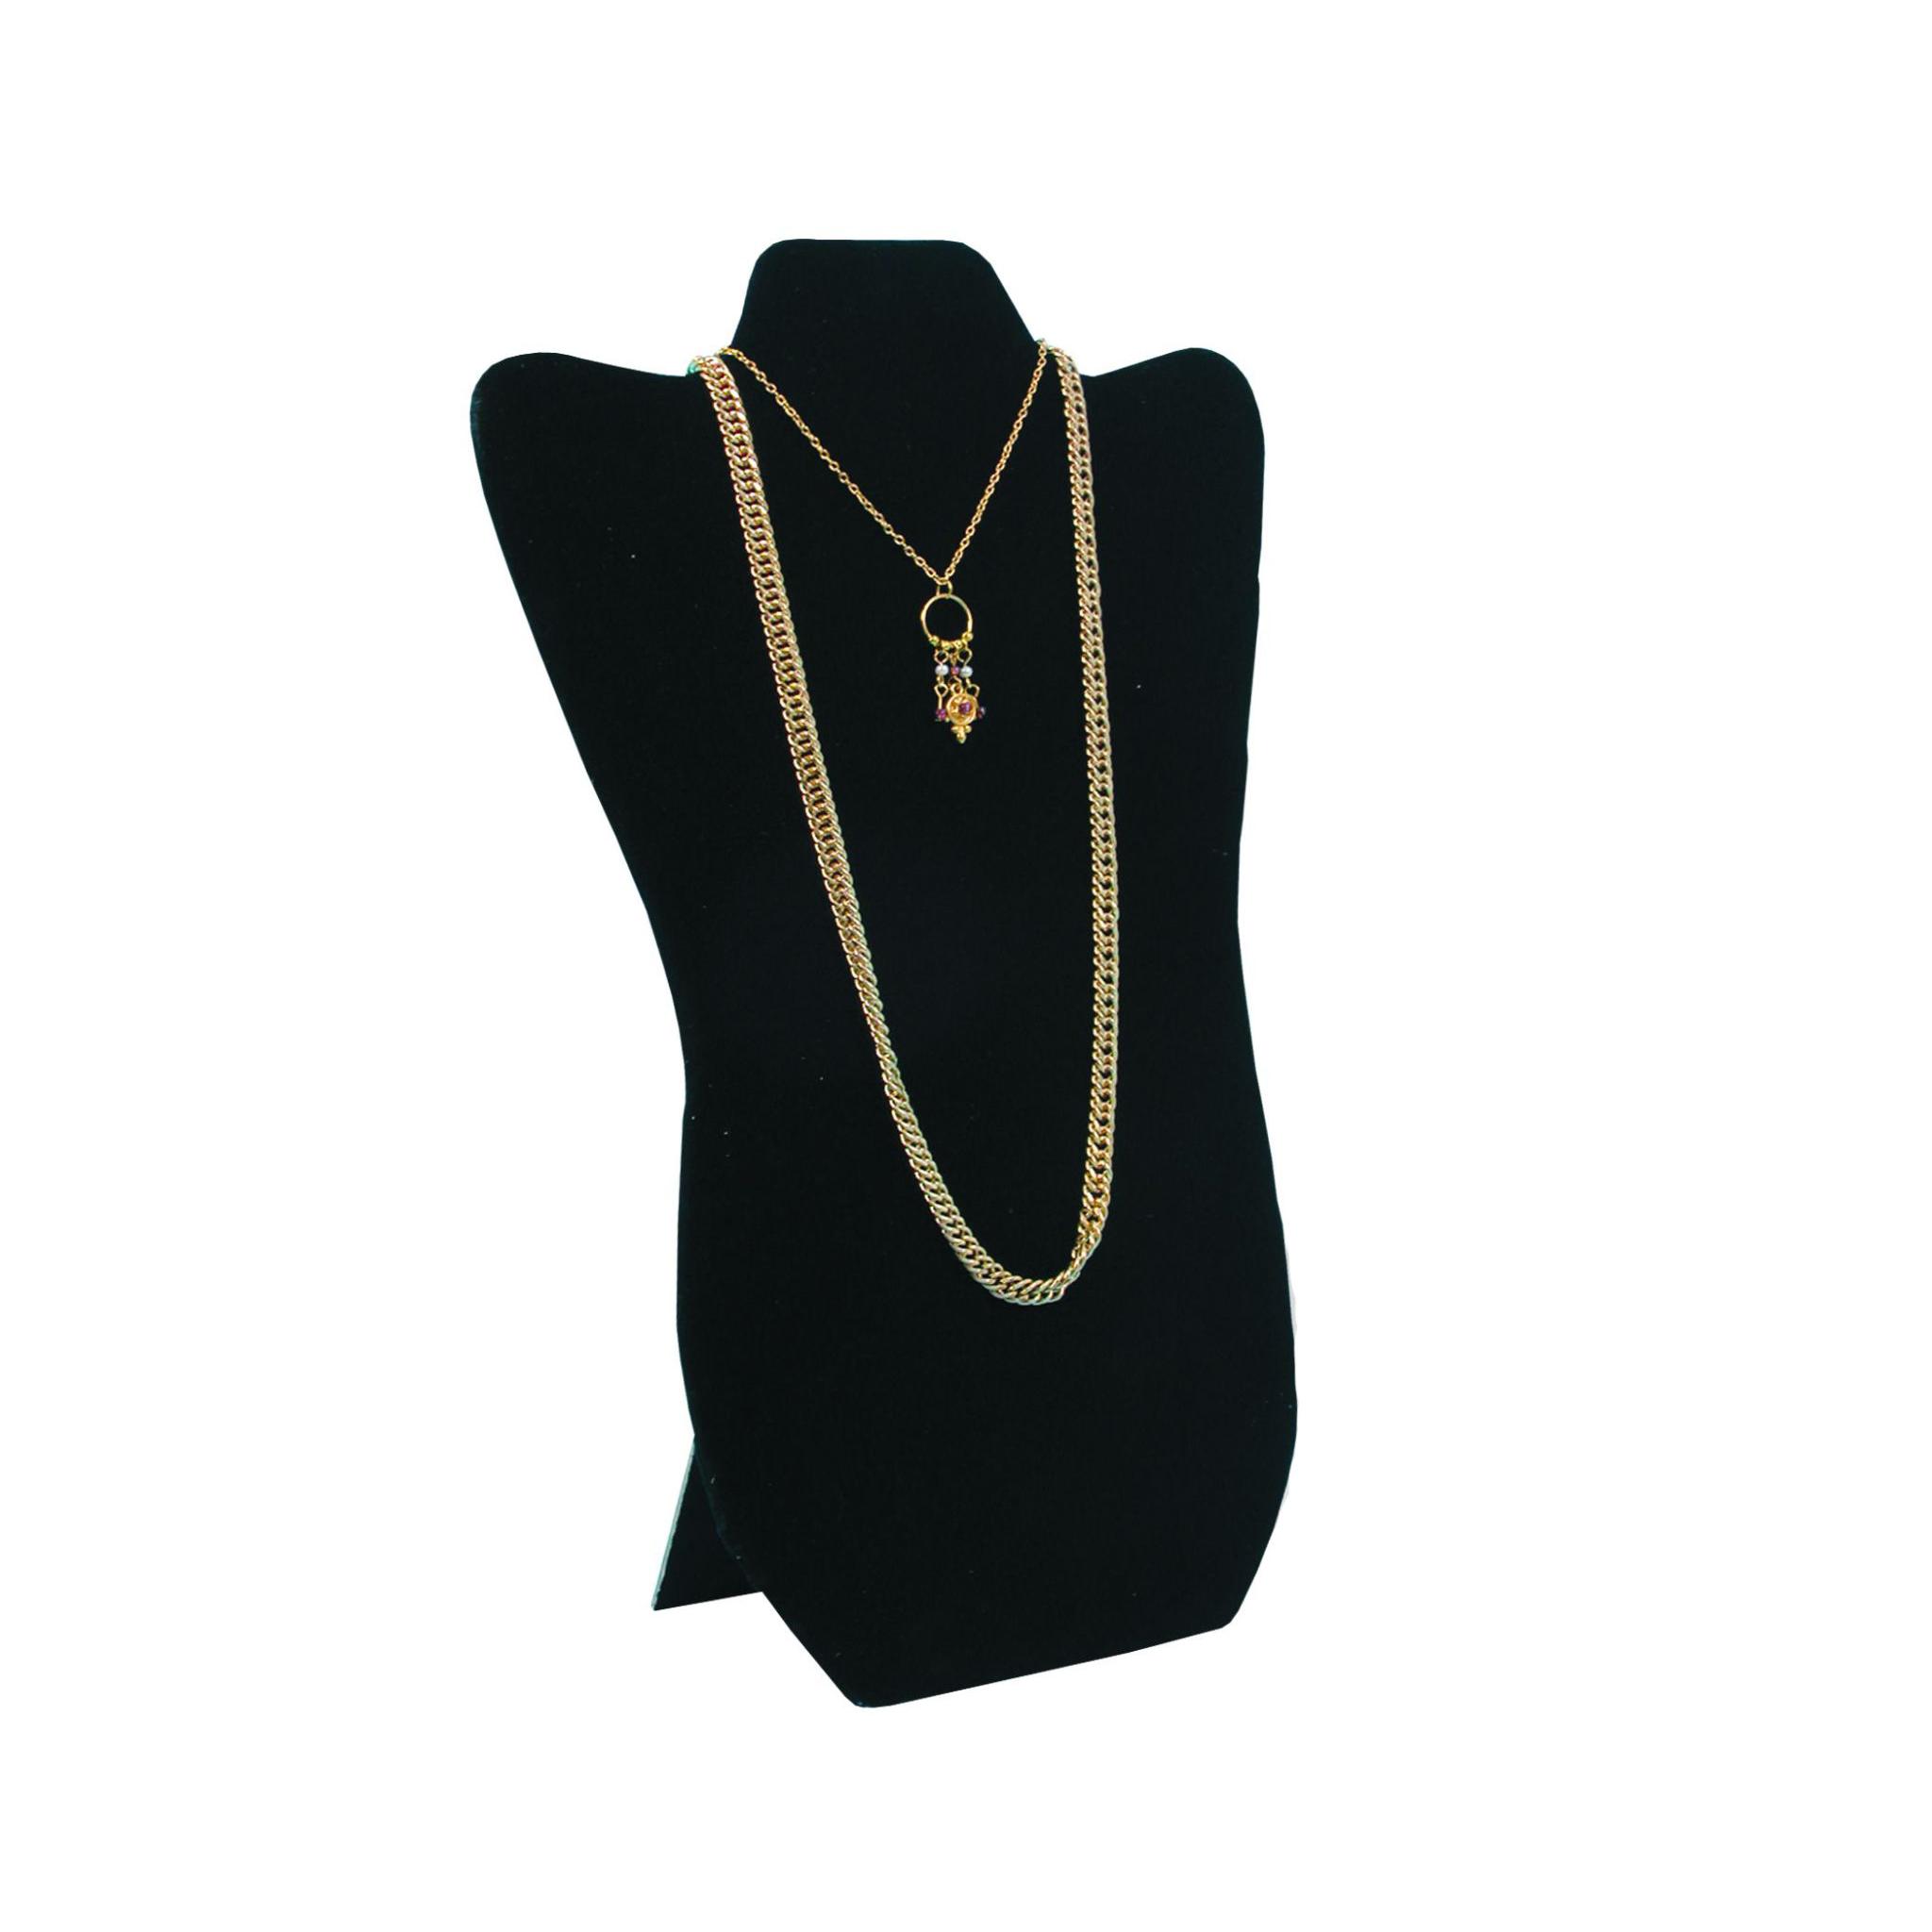 Black velvet padded necklace easel display